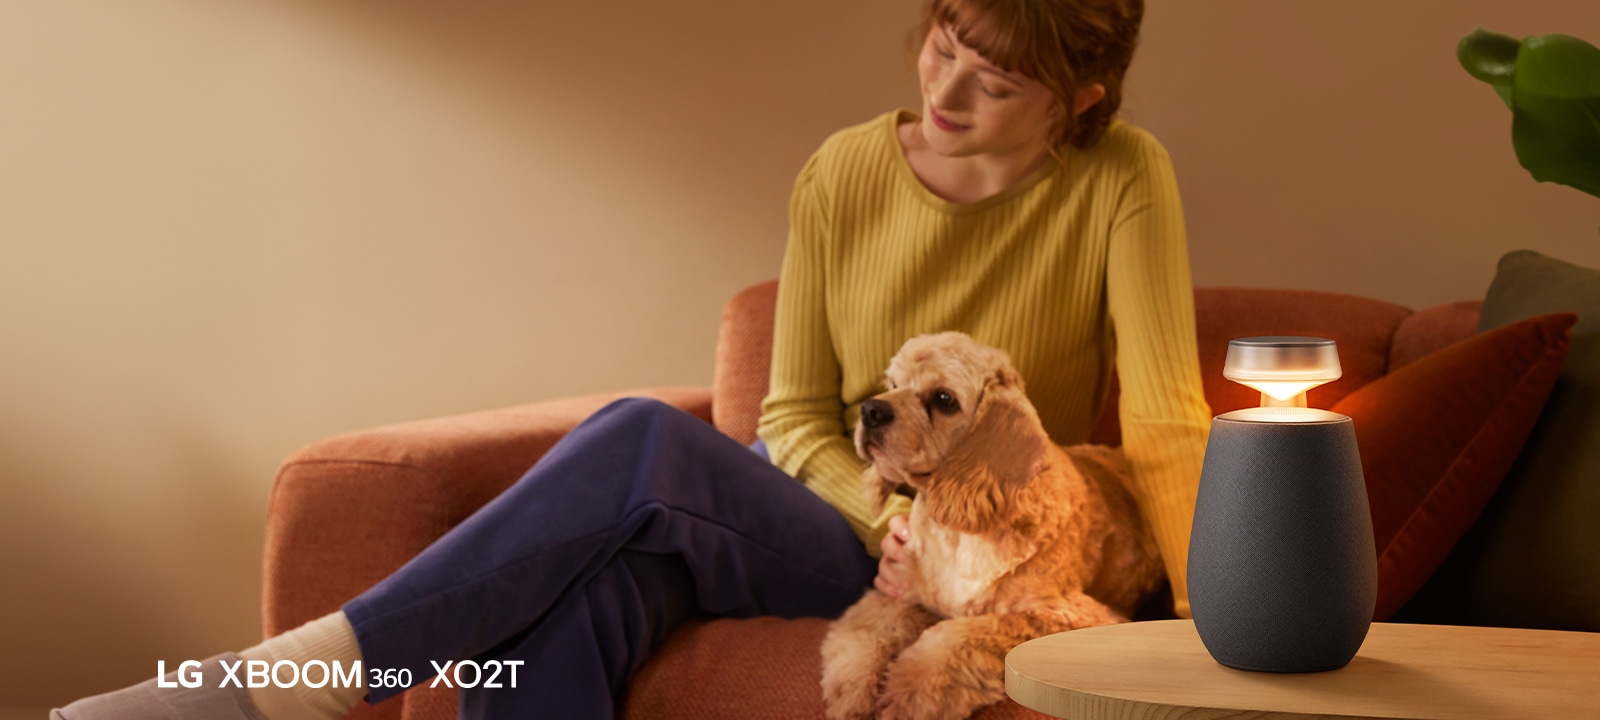 Una mujer sentada en el sofá con su perro y escuchando música con LG XBOOM 360 XO2T.